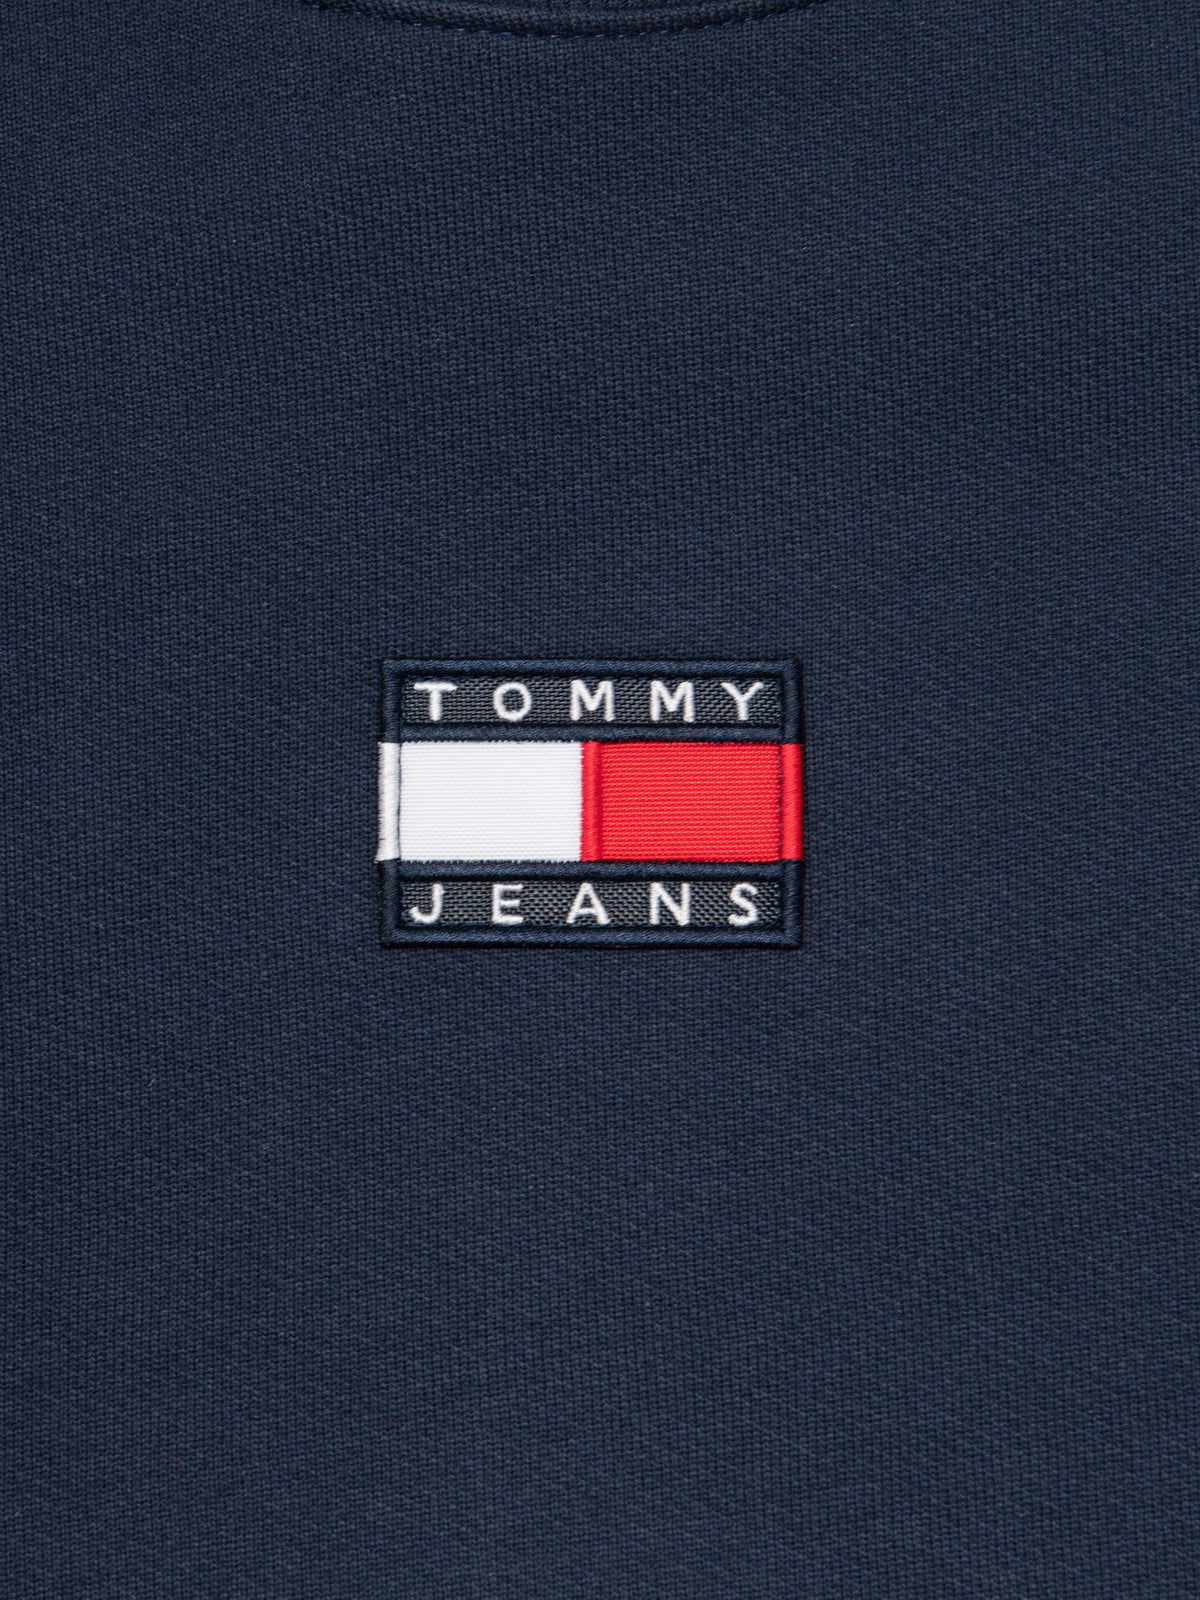 Tommy Badge Fleece Sweatshirt in Navy